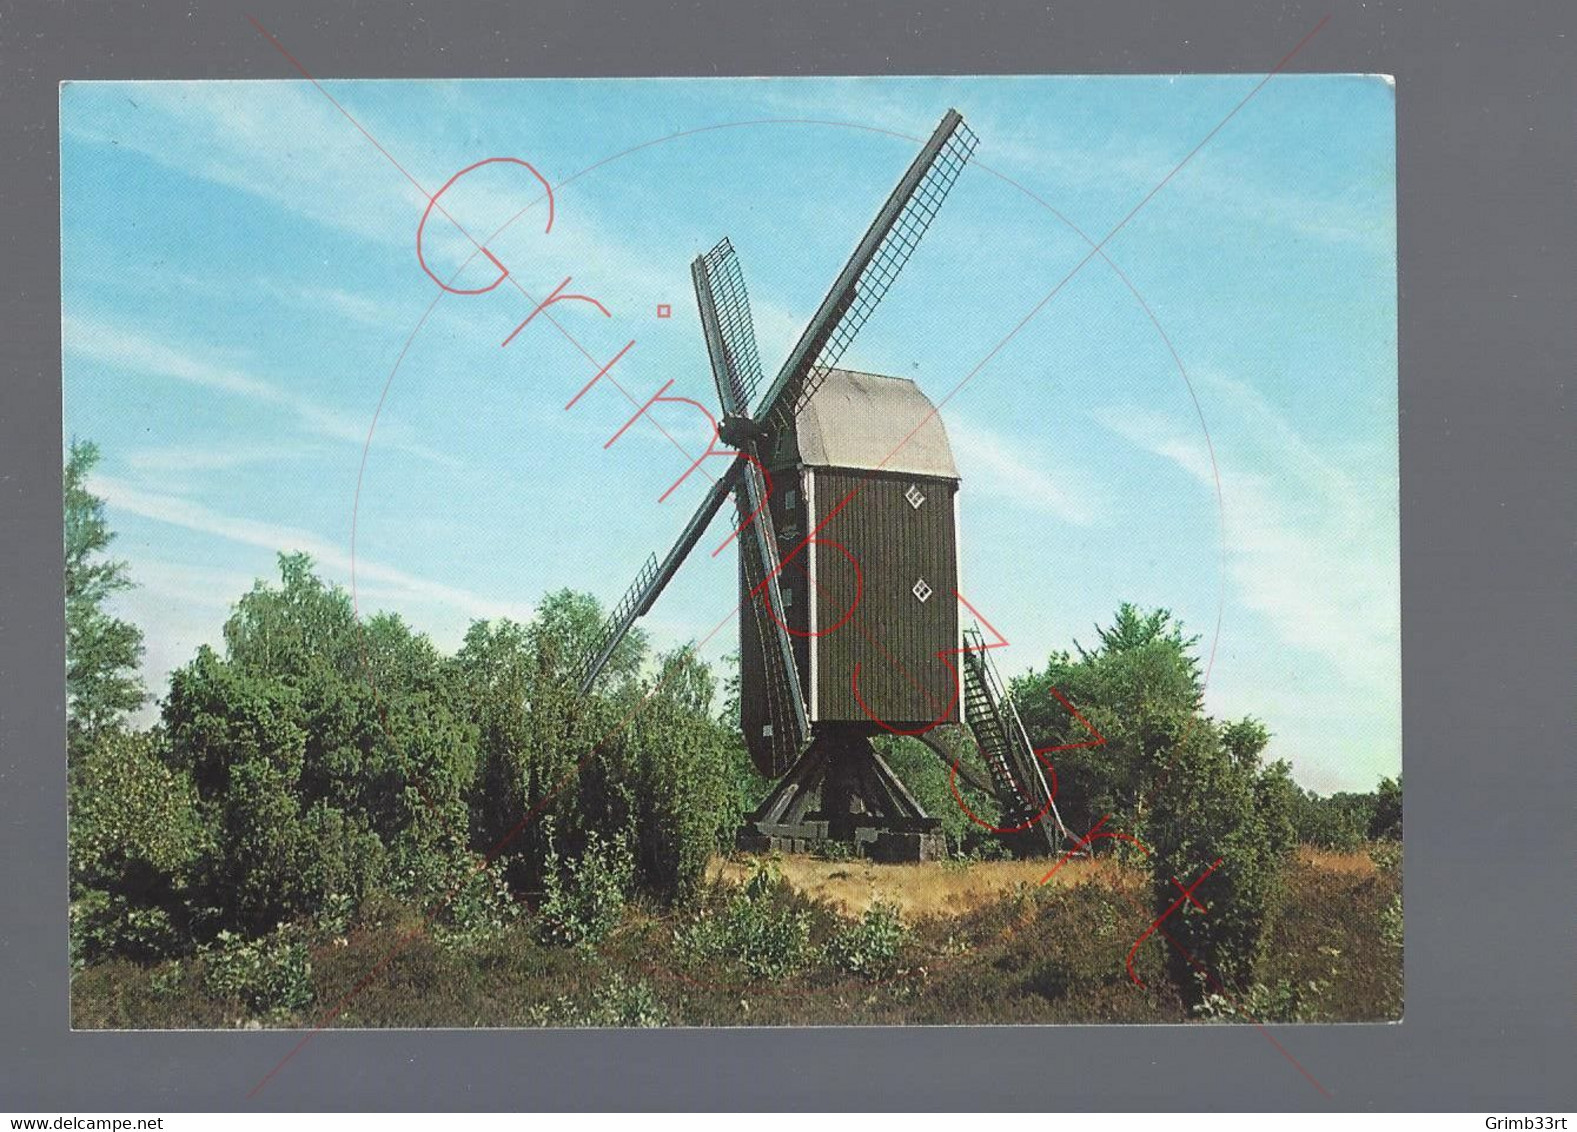 Haaksbergen - Wissink's Molen - Postkaart - Haaksbergen